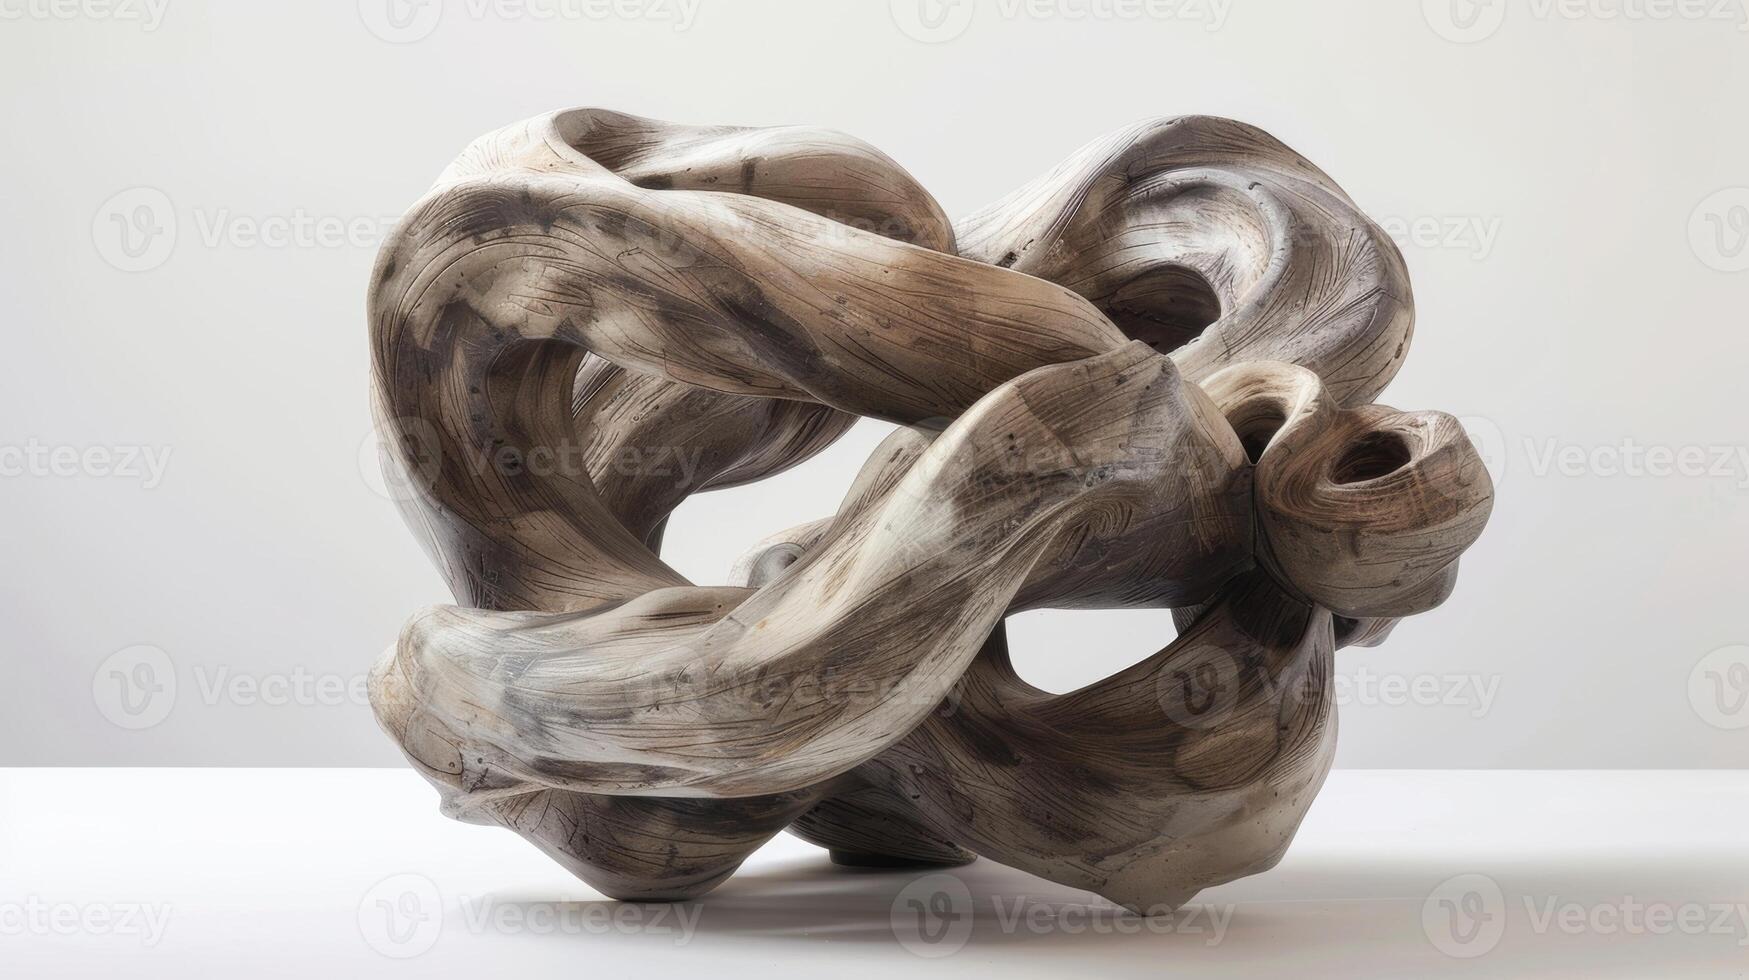 ett abstrakt keramisk skulptur med flera olika skikten av vriden lera visas till strömma och flätas ihop sömlöst. foto